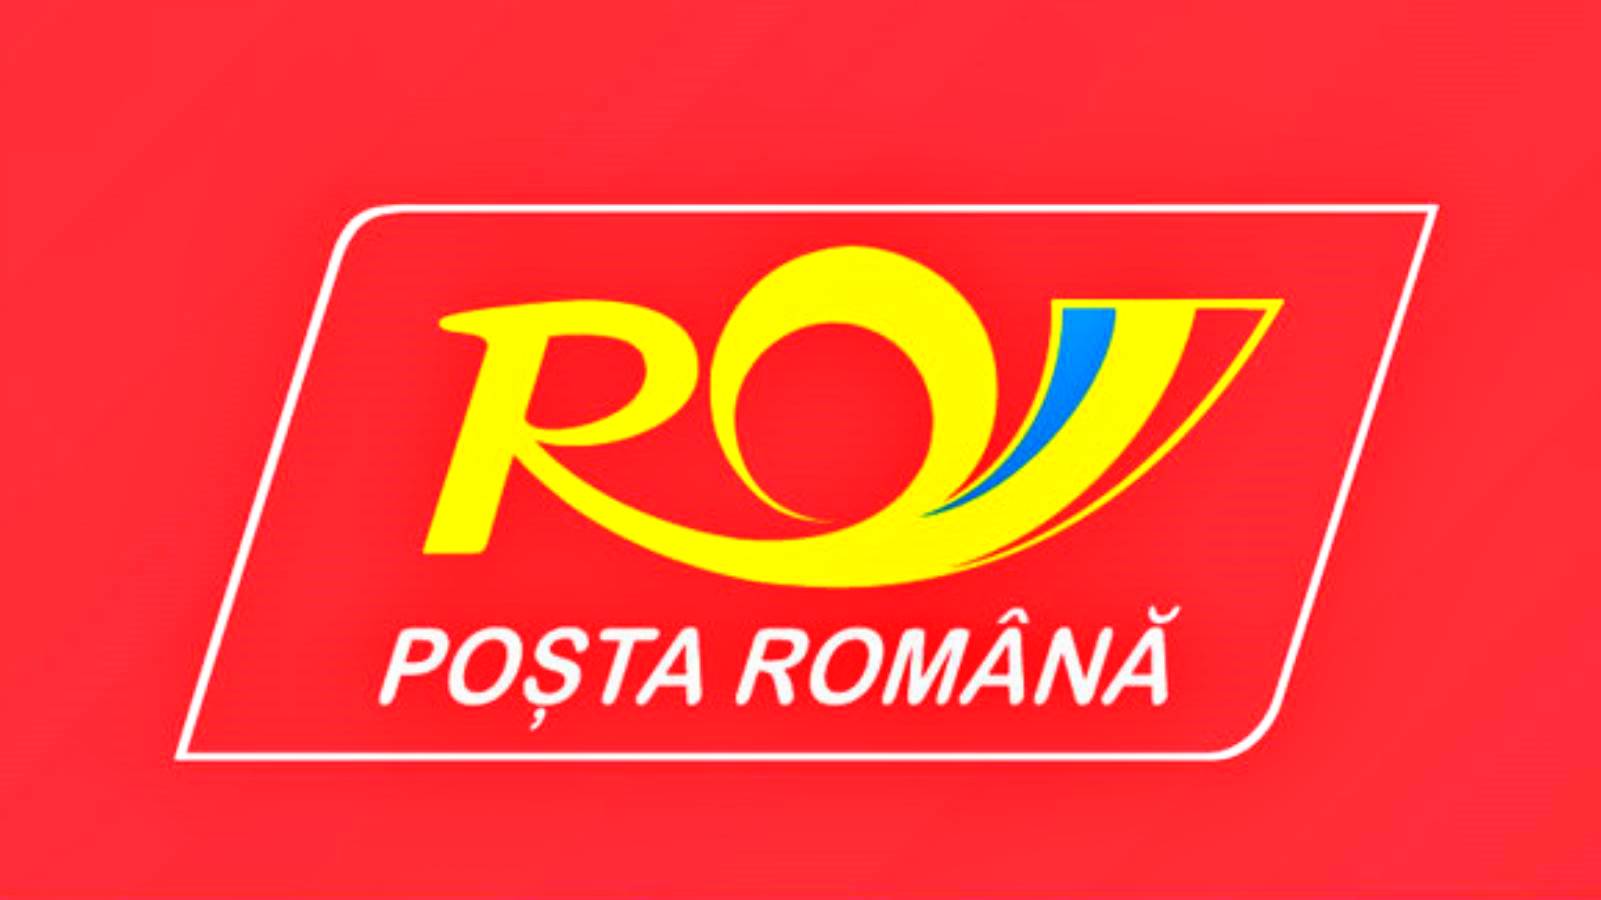 Aiuto postale rumeno offerto per l'imballaggio dei pacchi